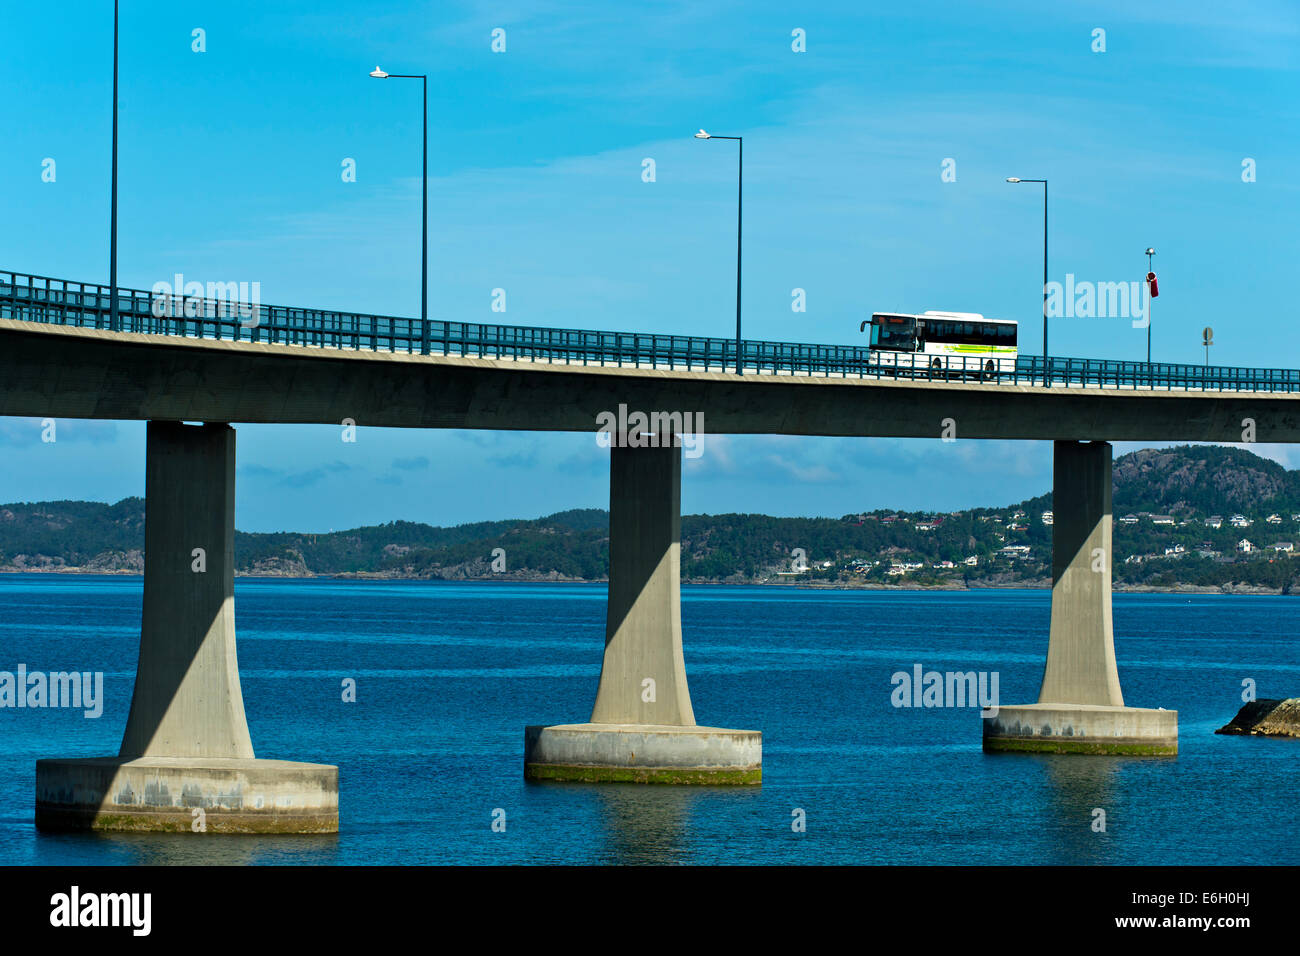 Le pont suspendu Pont Stord ou Stordabrua Digernessundet, de l'autre côté de la La Spezia, Norvège Banque D'Images